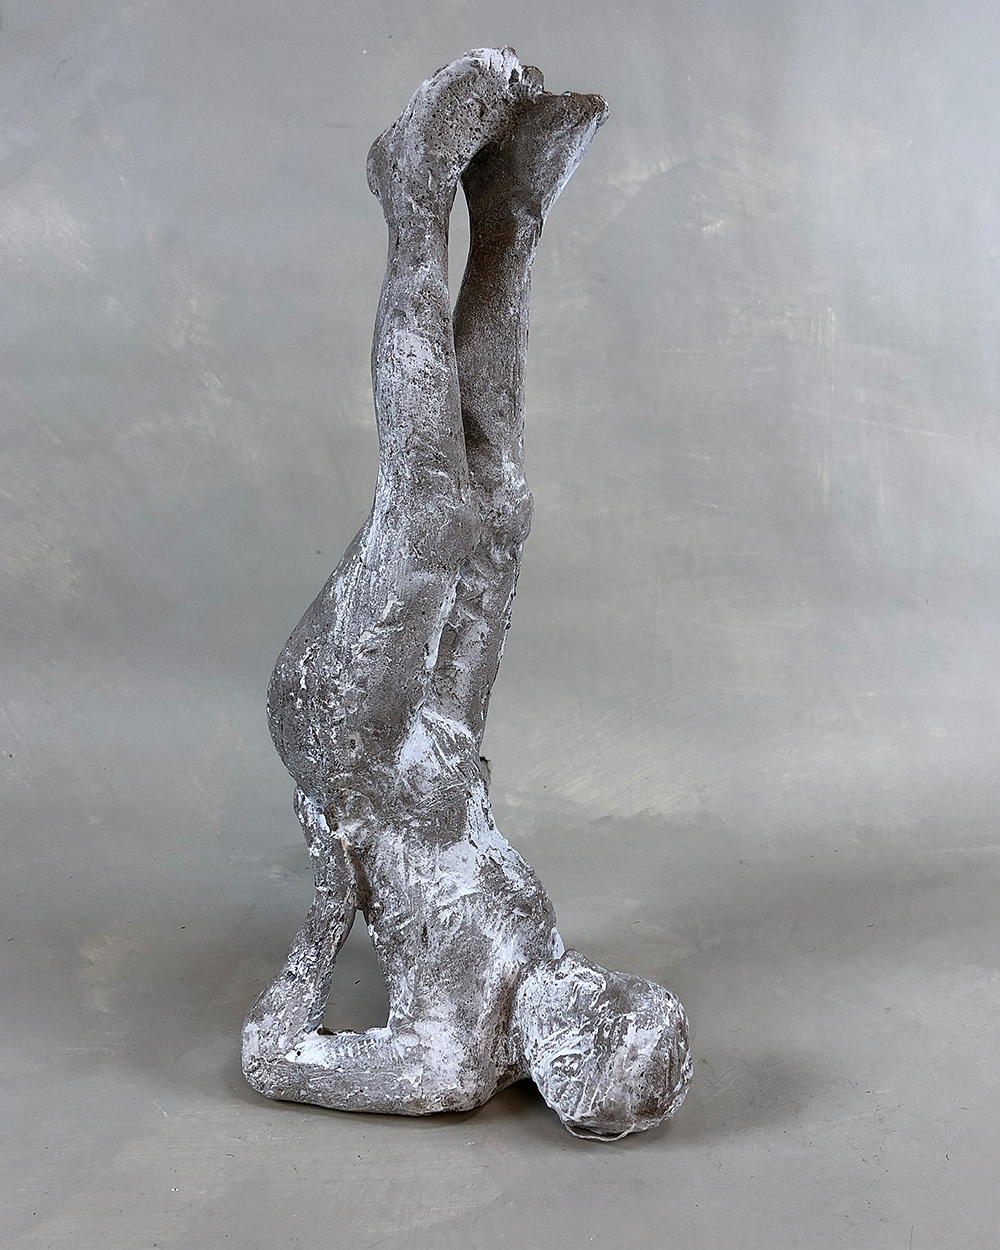 Due, Nina - Skulptur "Skulderstående"